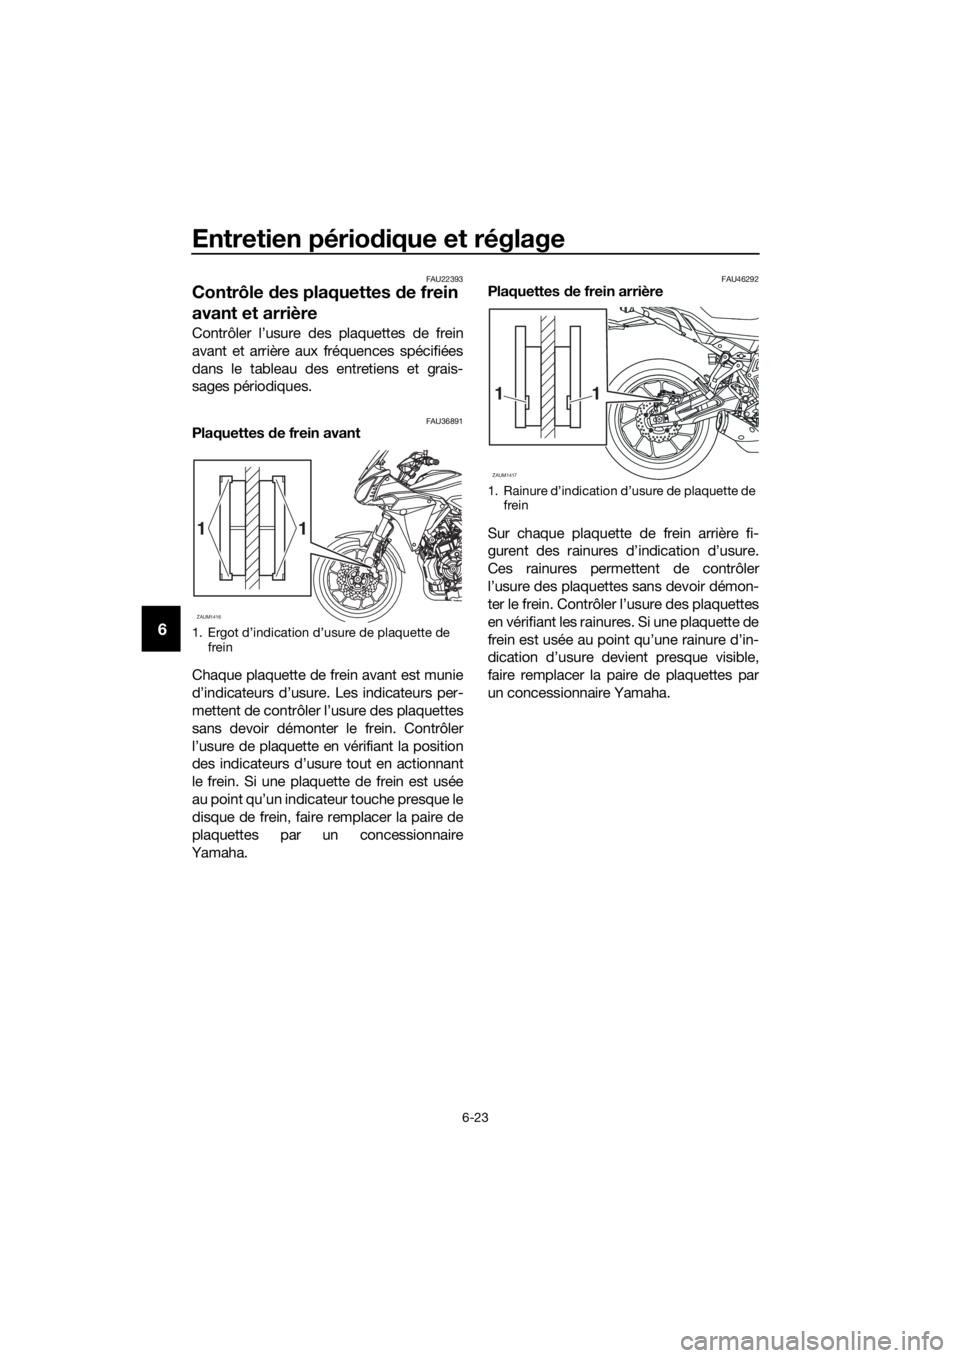 YAMAHA TRACER 700 2017  Notices Demploi (in French) Entretien périodique et réglage
6-23
6
FAU22393
Contrôle des plaquettes de frein 
avant et arrière
Contrôler l’usure des plaquettes de frein
avant et arrière aux fréquences spécifiées
dans 